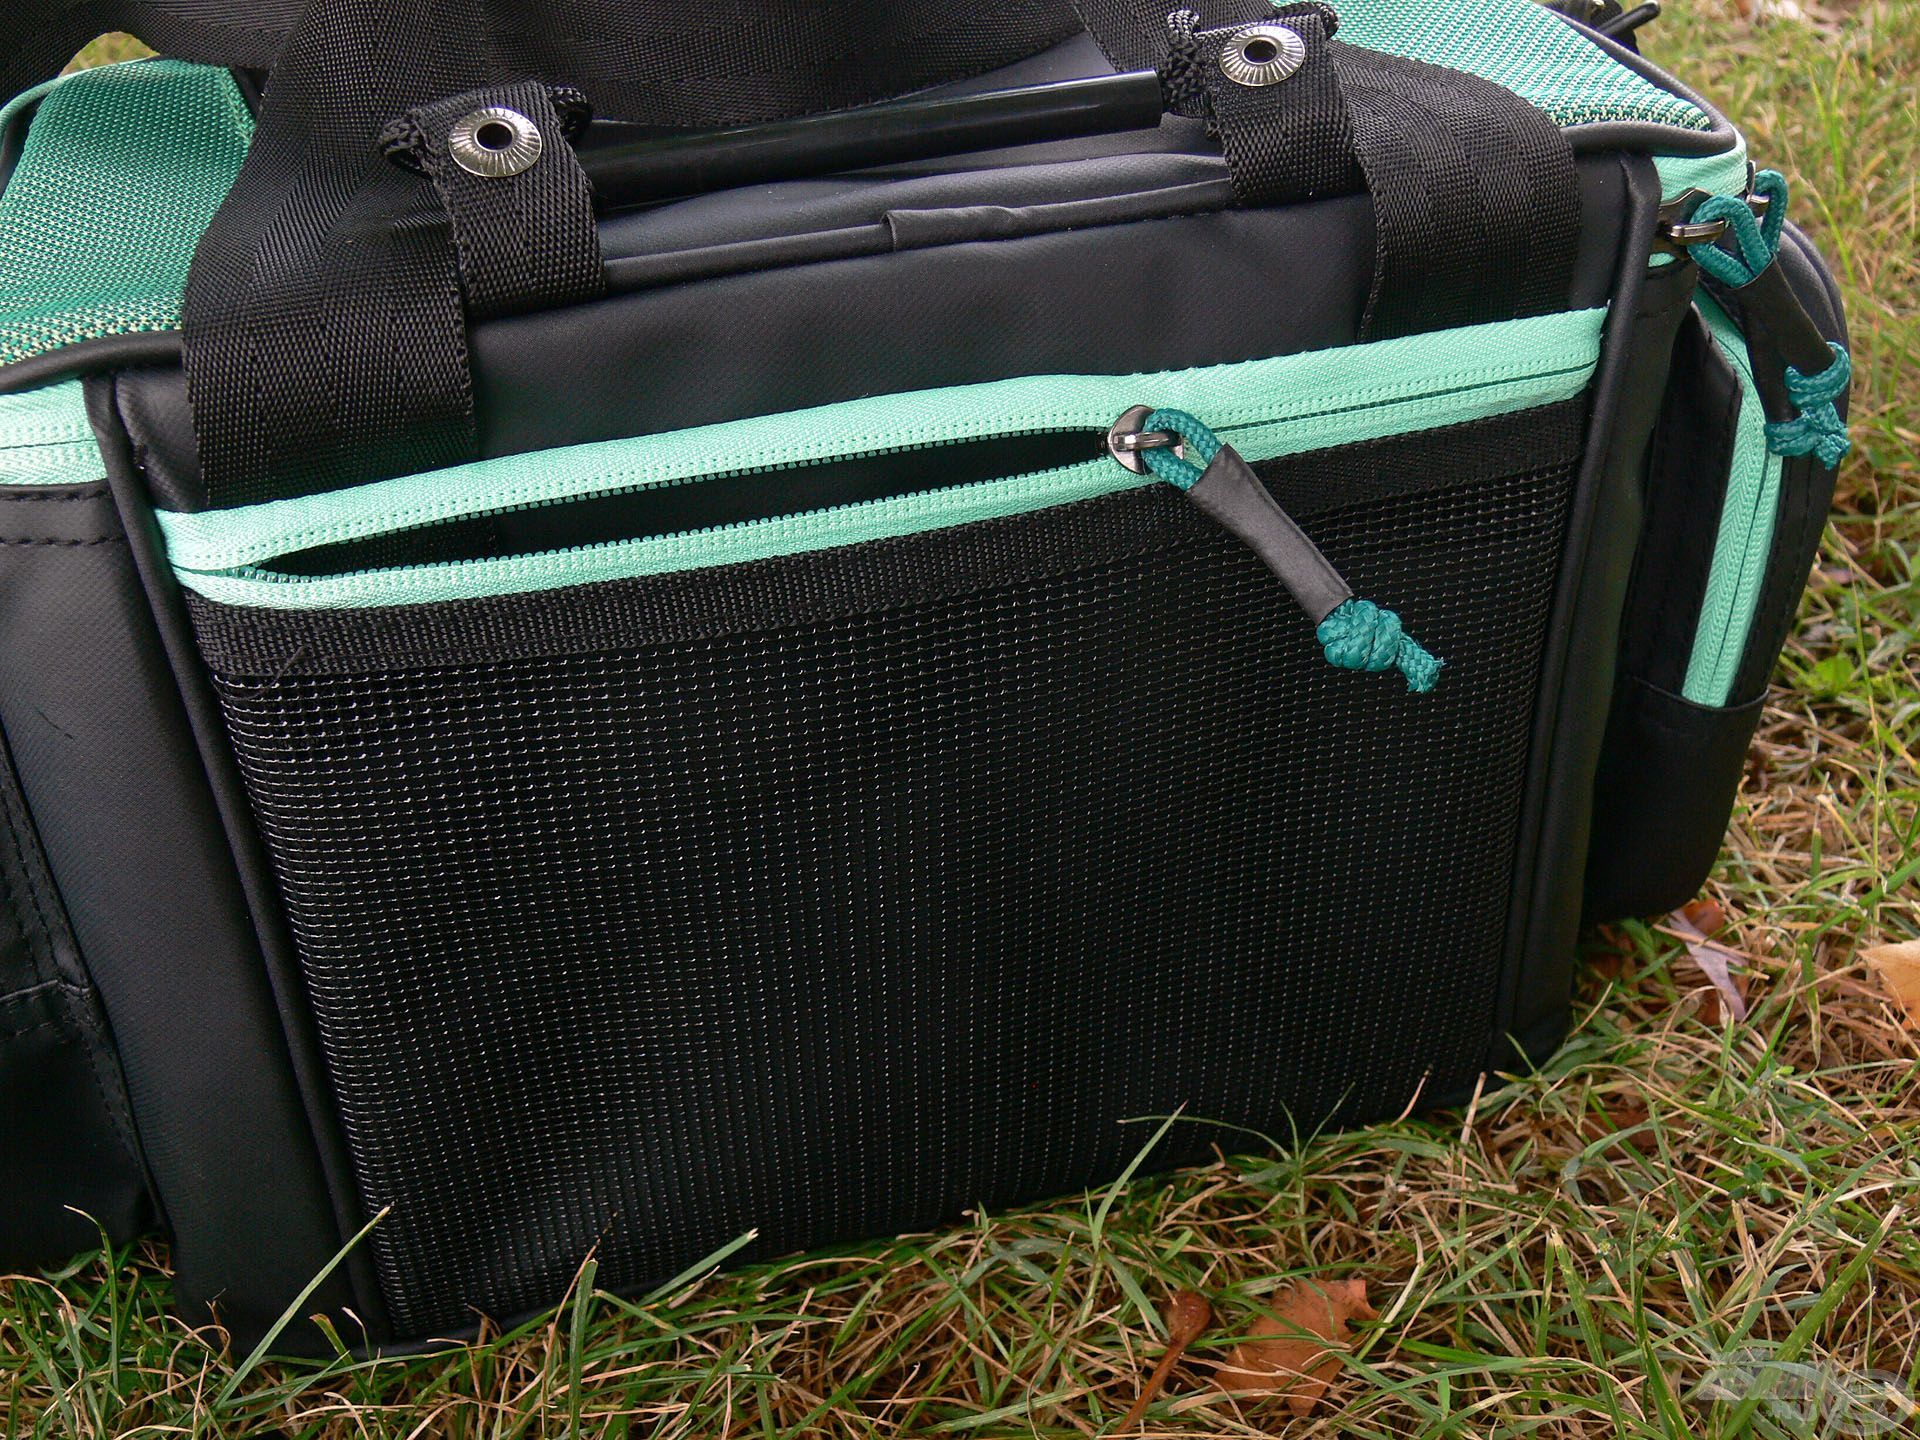 A táska hátulján van egy lapos, hálós zseb, amelybe a személyes iratok, horgászengedély, telefon vagy egyéb lapos apróság elfér